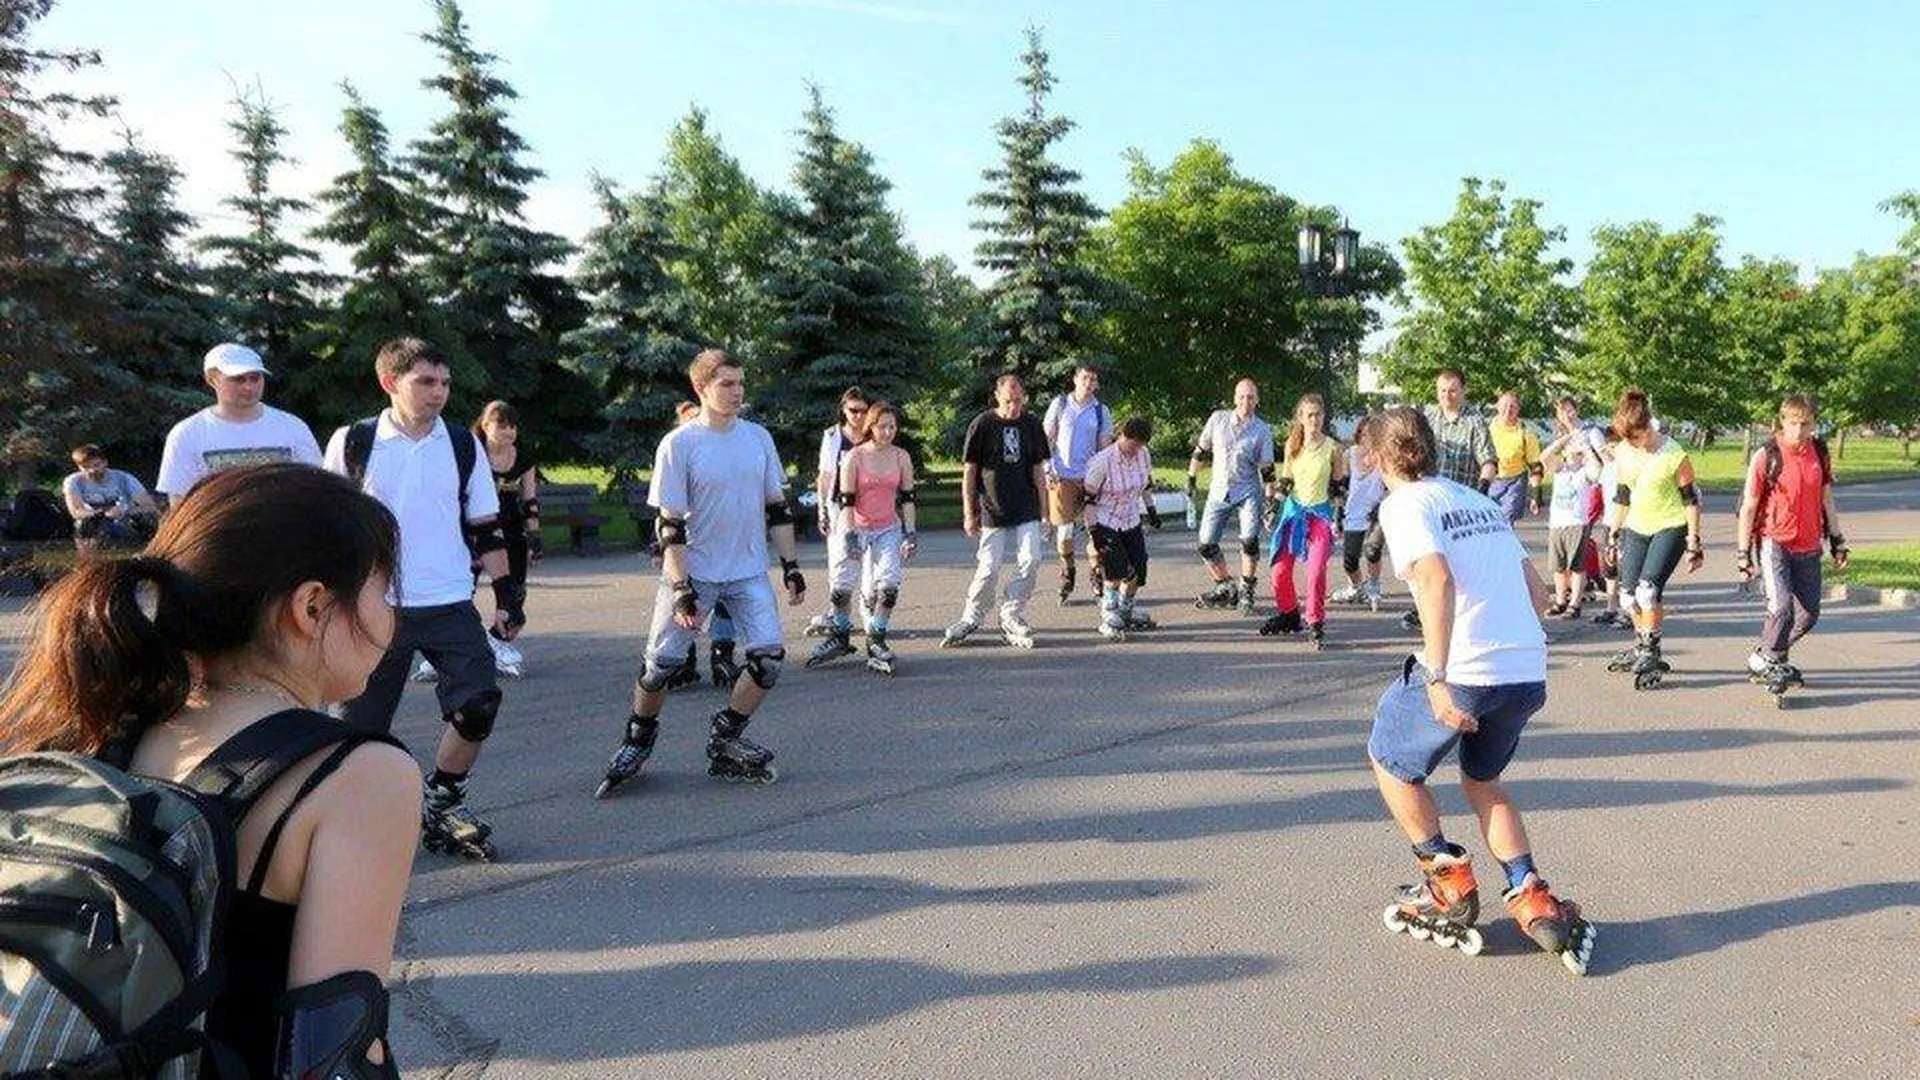 Бесплатные занятия по роллерспорту будут проходить в Москве в парке Победы